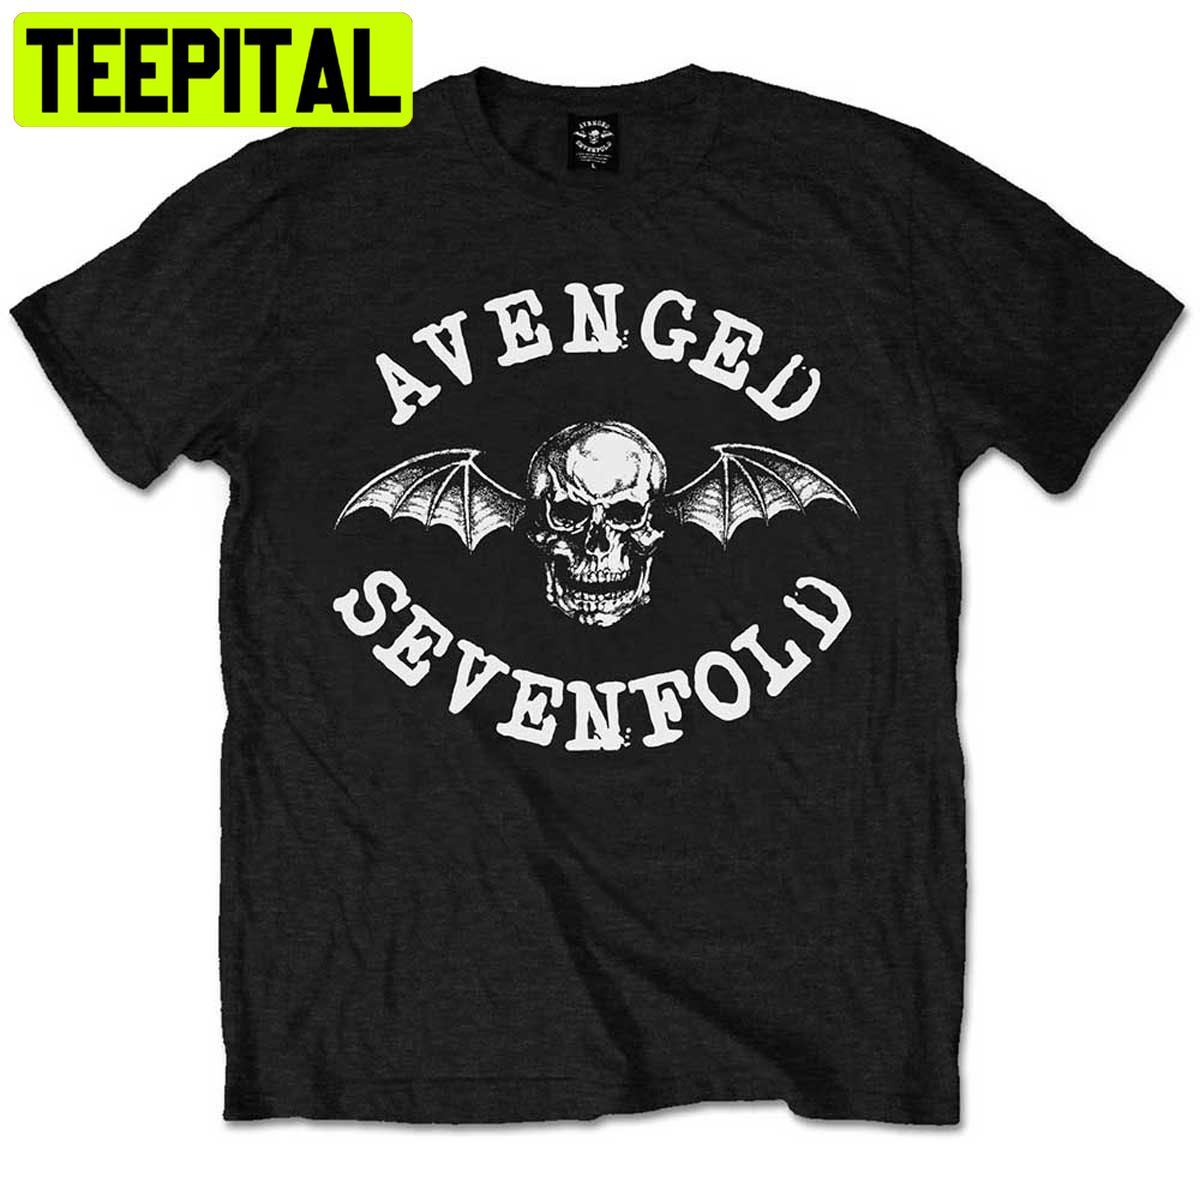 Avenged Sevenfold A7x Classic Deathbat Trending Unisex Shirt